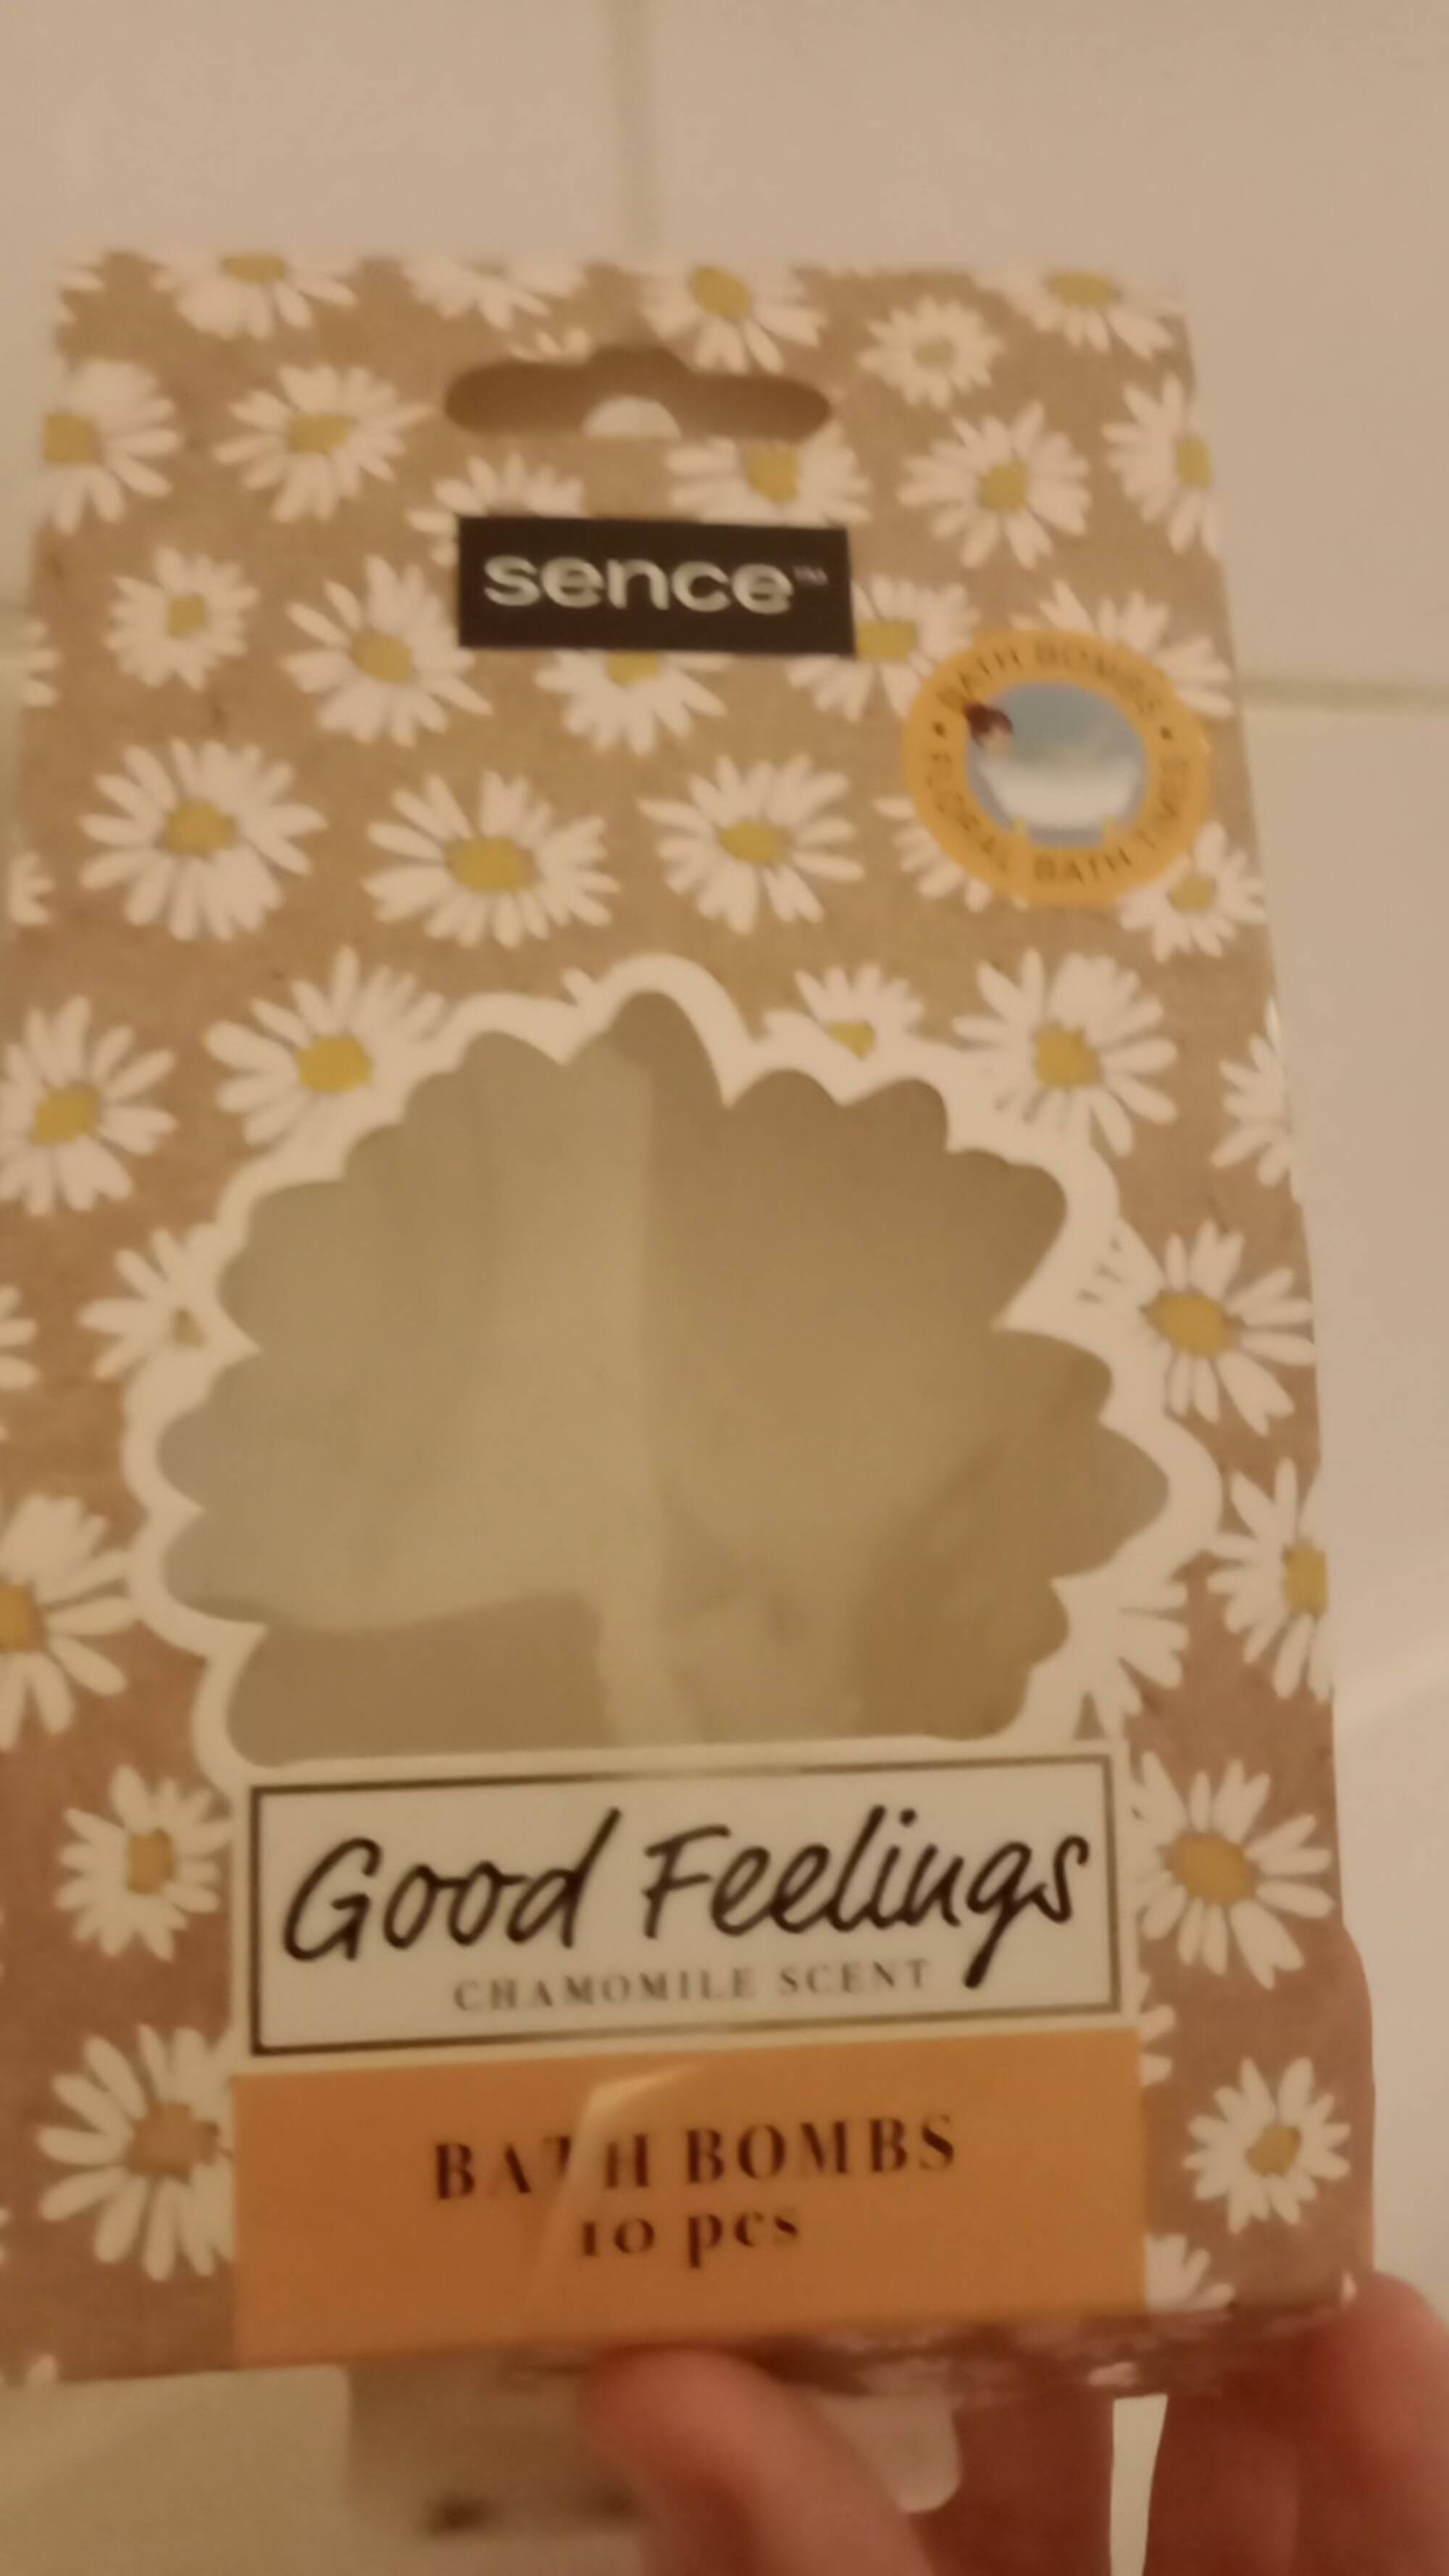 SENCE - Good feelings - Bath bombs